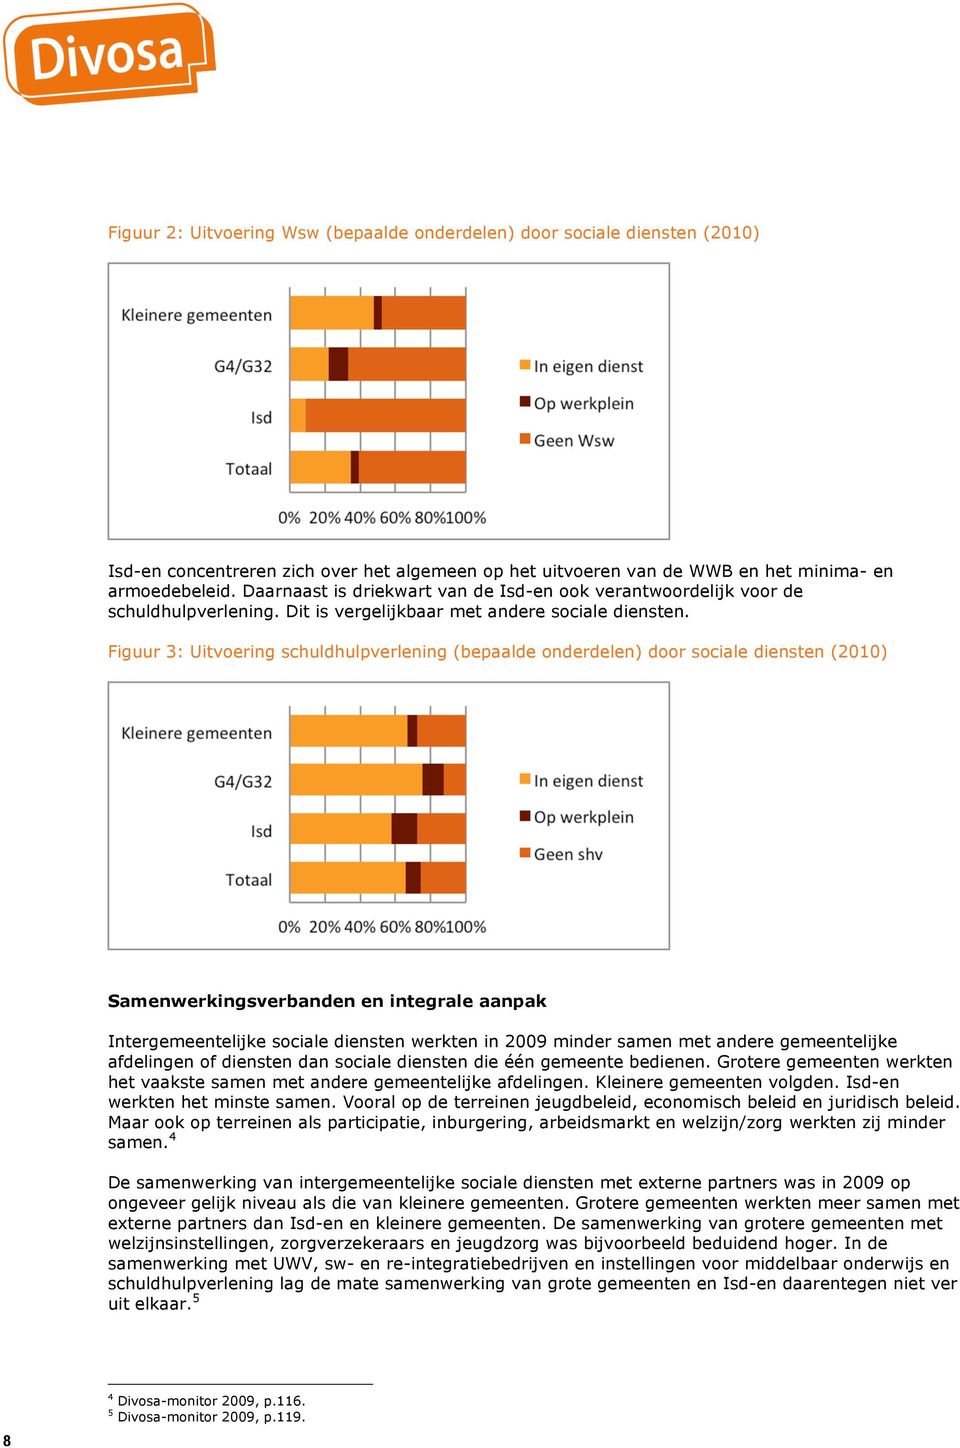 Figuur 3: Uitvoering schuldhulpverlening (bepaalde onderdelen) door sociale diensten (2010) Samenwerkingsverbanden en integrale aanpak Intergemeentelijke sociale diensten werkten in 2009 minder samen